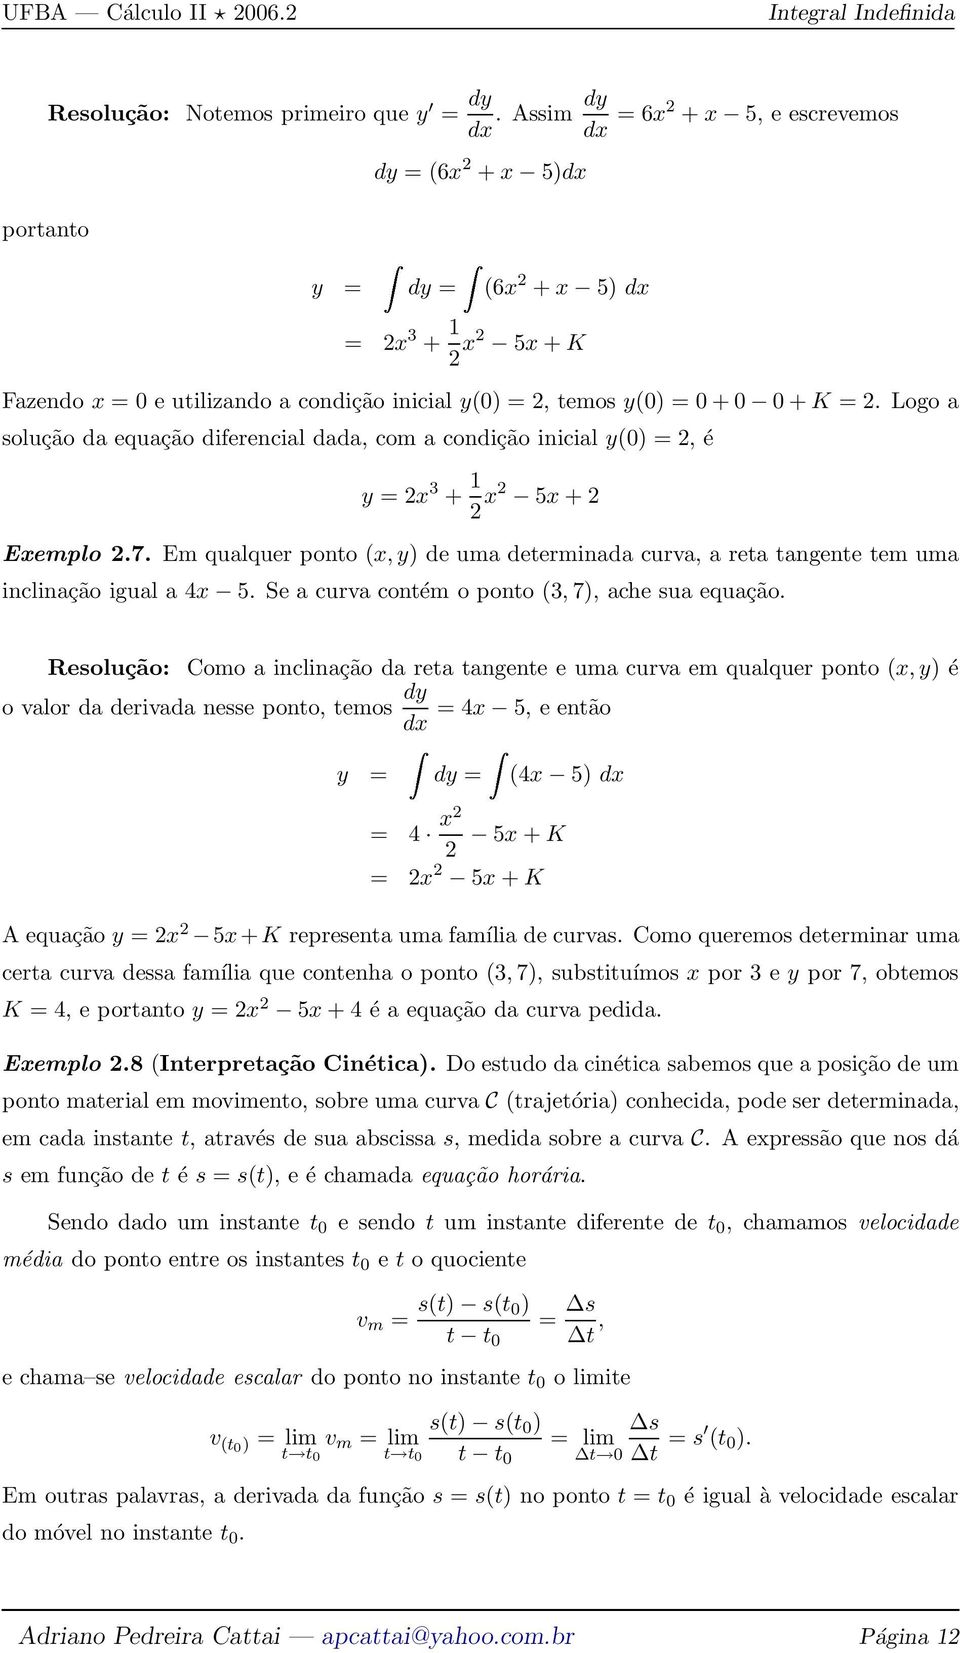 Logo a solução da equação diferencial dada, com a condição inicial y(0) =, é y = x 3 + x 5x + Exemplo.7.